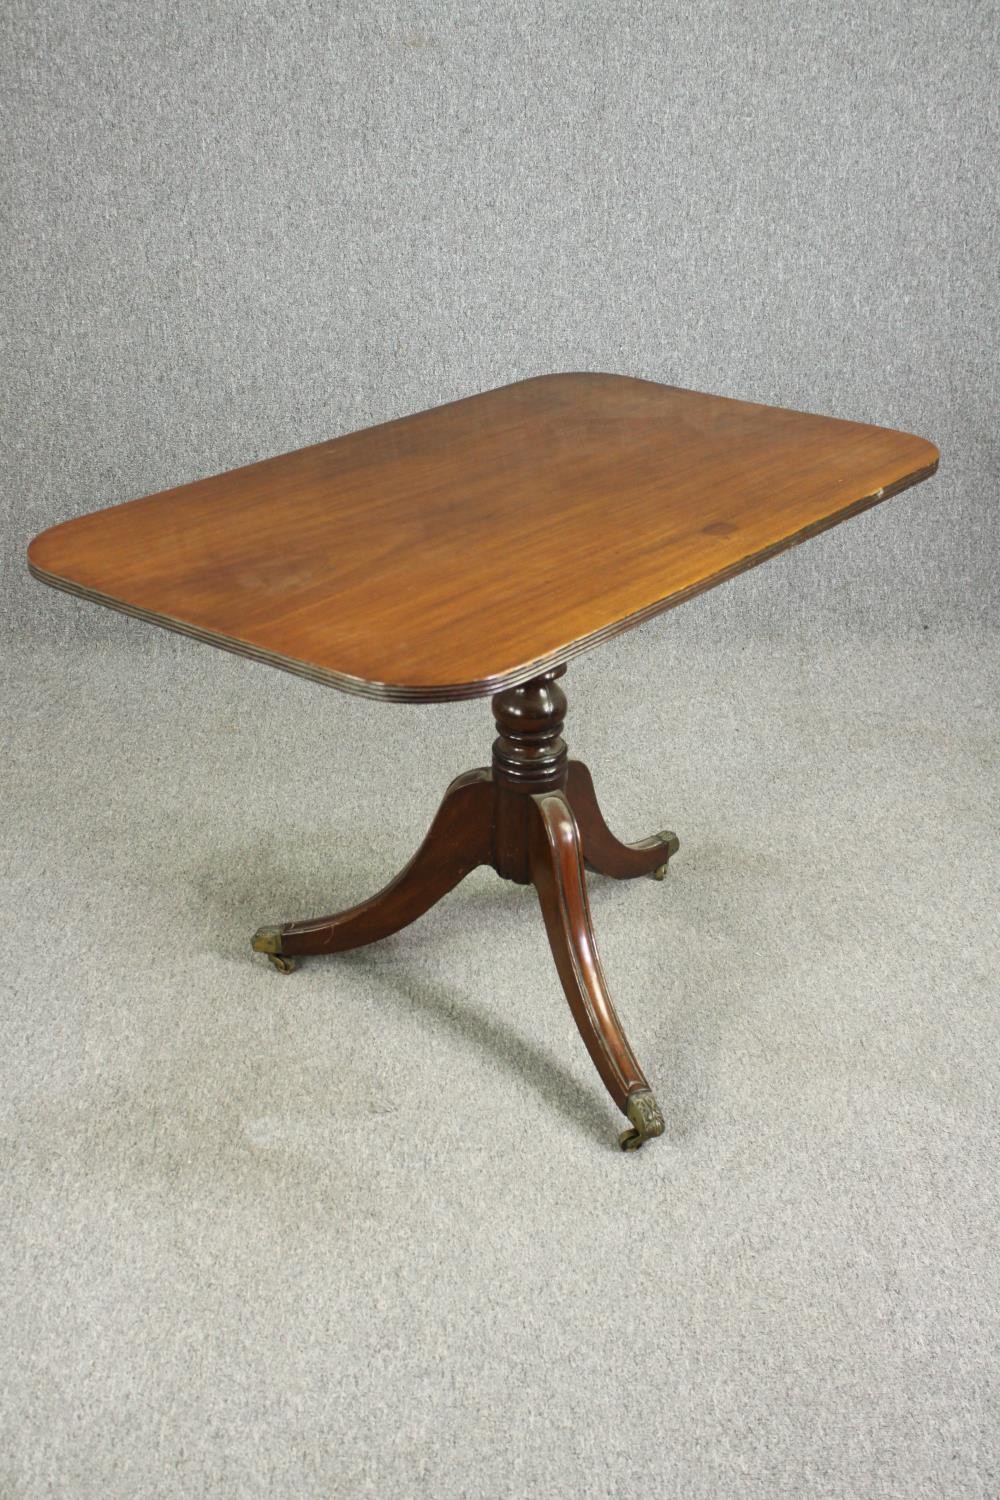 A Regency style tilt-top centre table, 19th century H.73 W.110 D.66cm. - Image 3 of 7